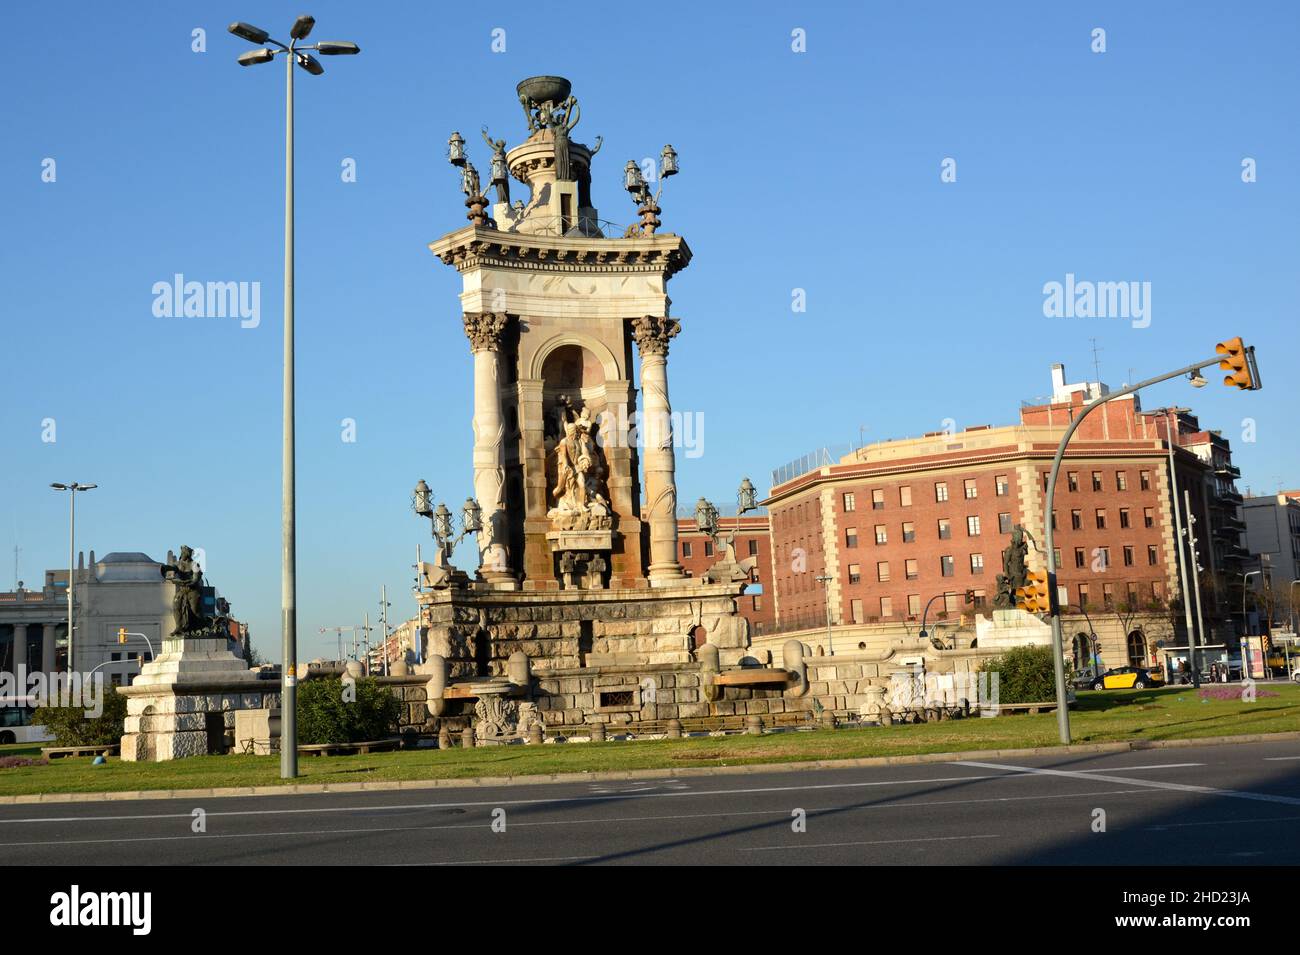 Spagna, Barcellona, il suare di Spagna è un centro nevralgico della città, in questo centro è una fontana monumentale con allegoria poetica. Foto Stock